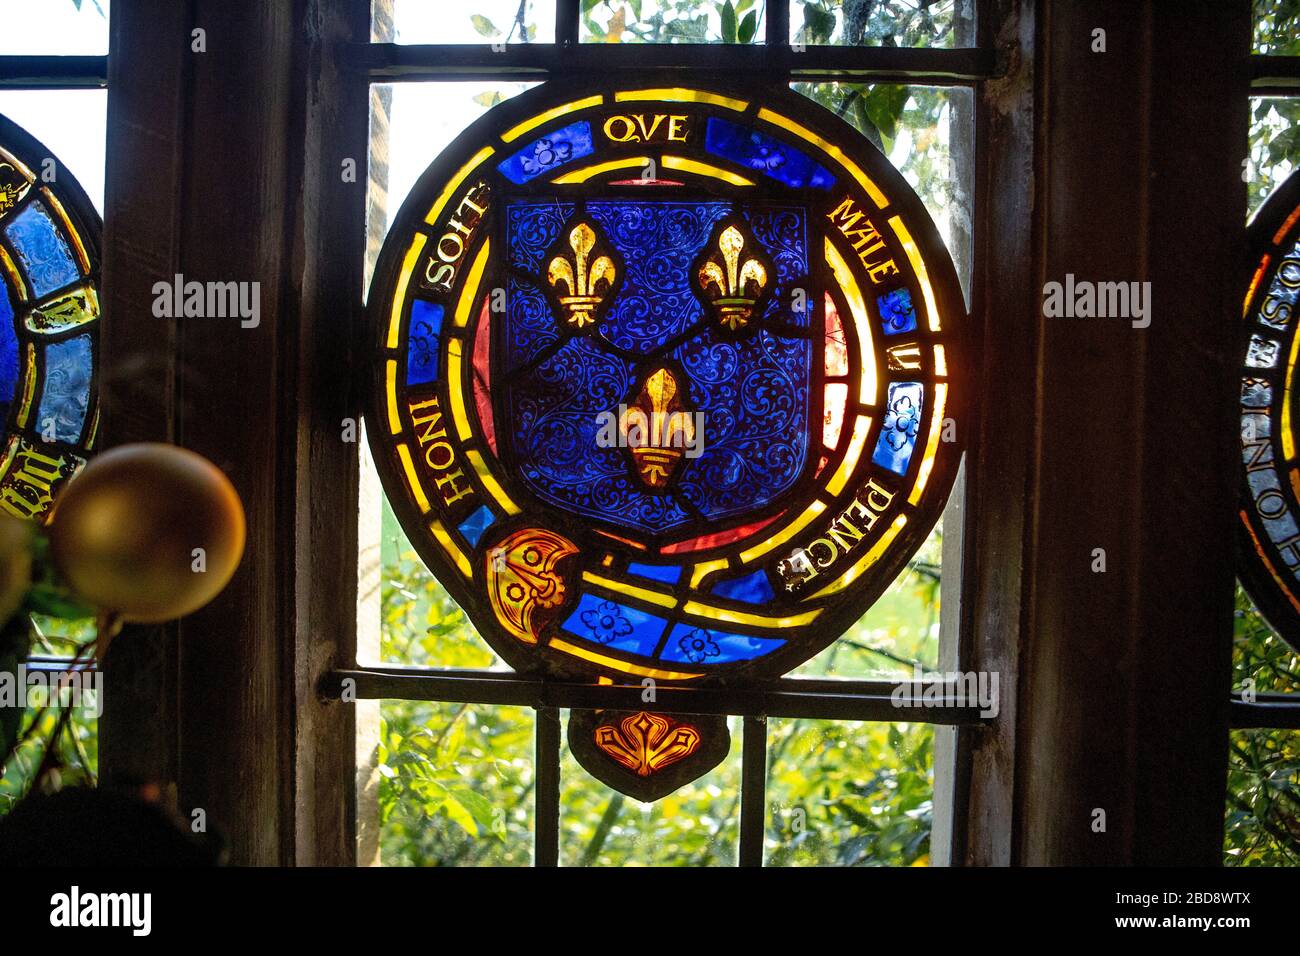 Heraldische Buntglasfenster im Chawton House, die Wappen zeigen. Jane Austen bezog sich auf dieses Haus, ihr Bruder lebte dort. Stockfoto